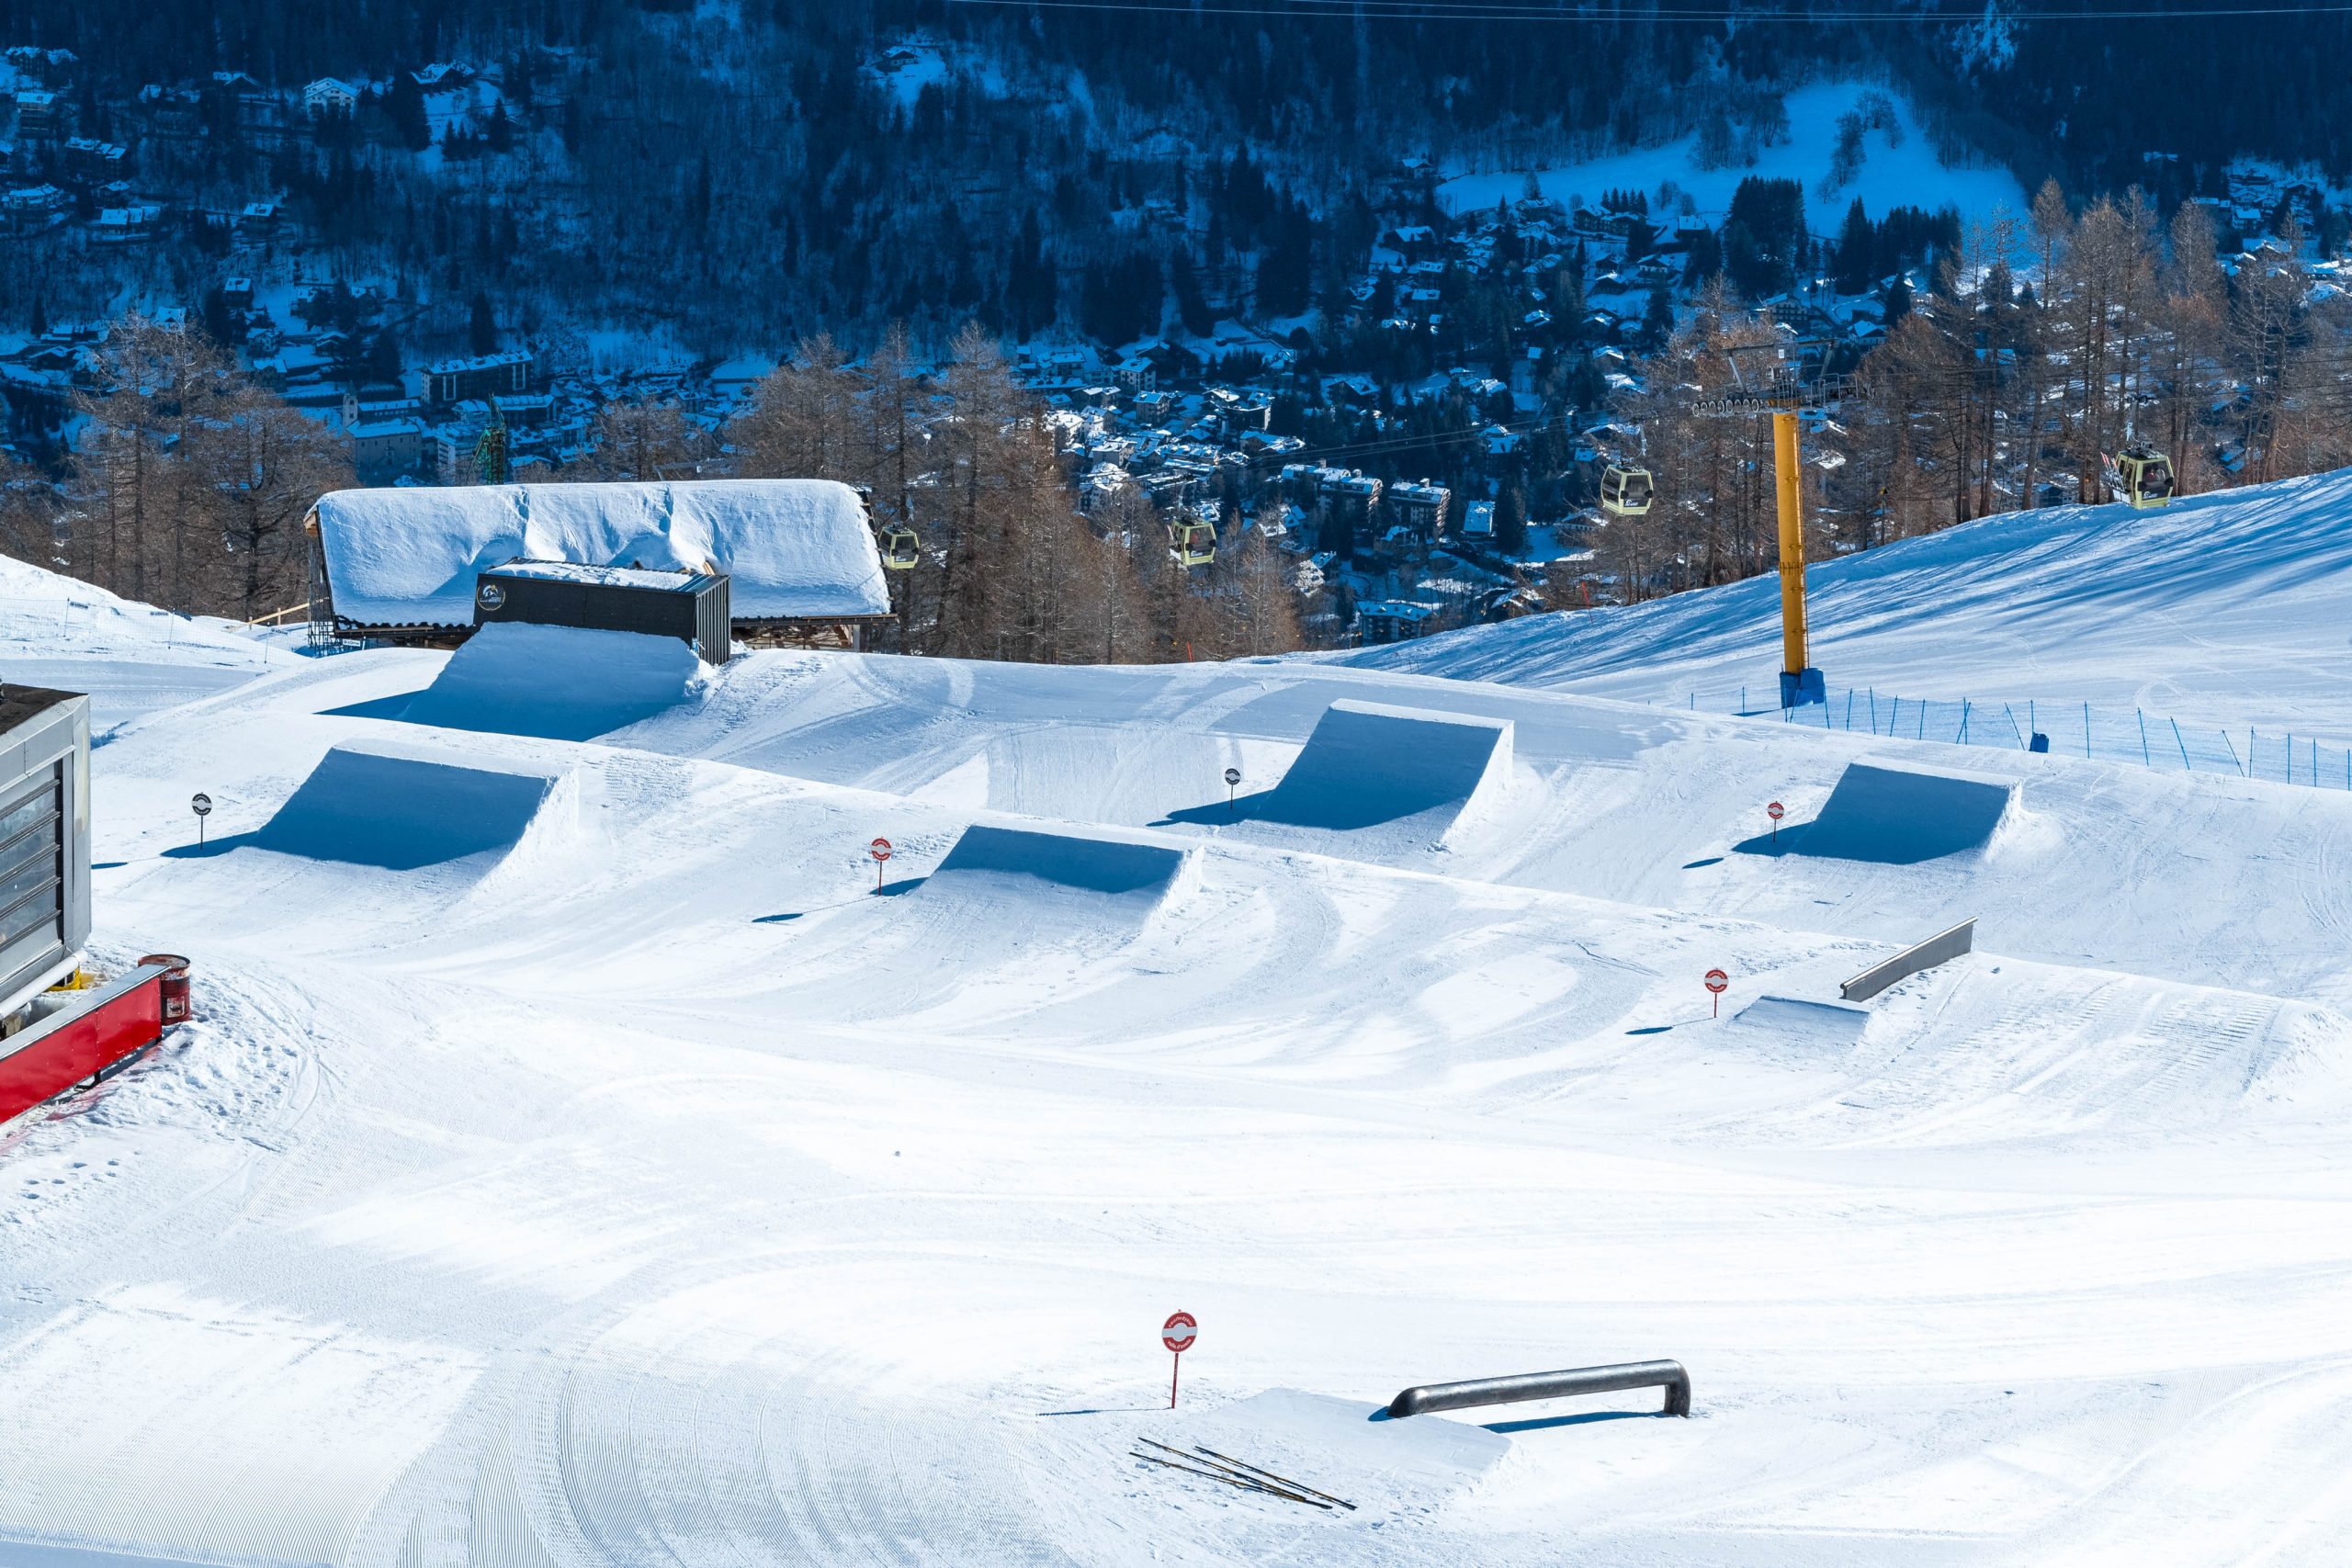 SNOW PARK
Pour les amateurs du ski acrobatique, Courmayeur offre un extraordinaire Snowpark situé au cœur de la station de ski. A 2000 mètres d’altitude, ce parc est un paradis pour les amateurs des acrobaties sur neige. Il est méticuleusement conçu et offre un espace progressif avec quatre lignes adaptées à tous les niveaux, avec des rails, des whoops et des funboxes. Il y a également deux types de sauts, facile et moyen, et des rails conçus pour les débutants et les jeunes skieurs. Embarquez dans votre aventure dans le Snowpark de Courmayeur!
Découvrir plus
